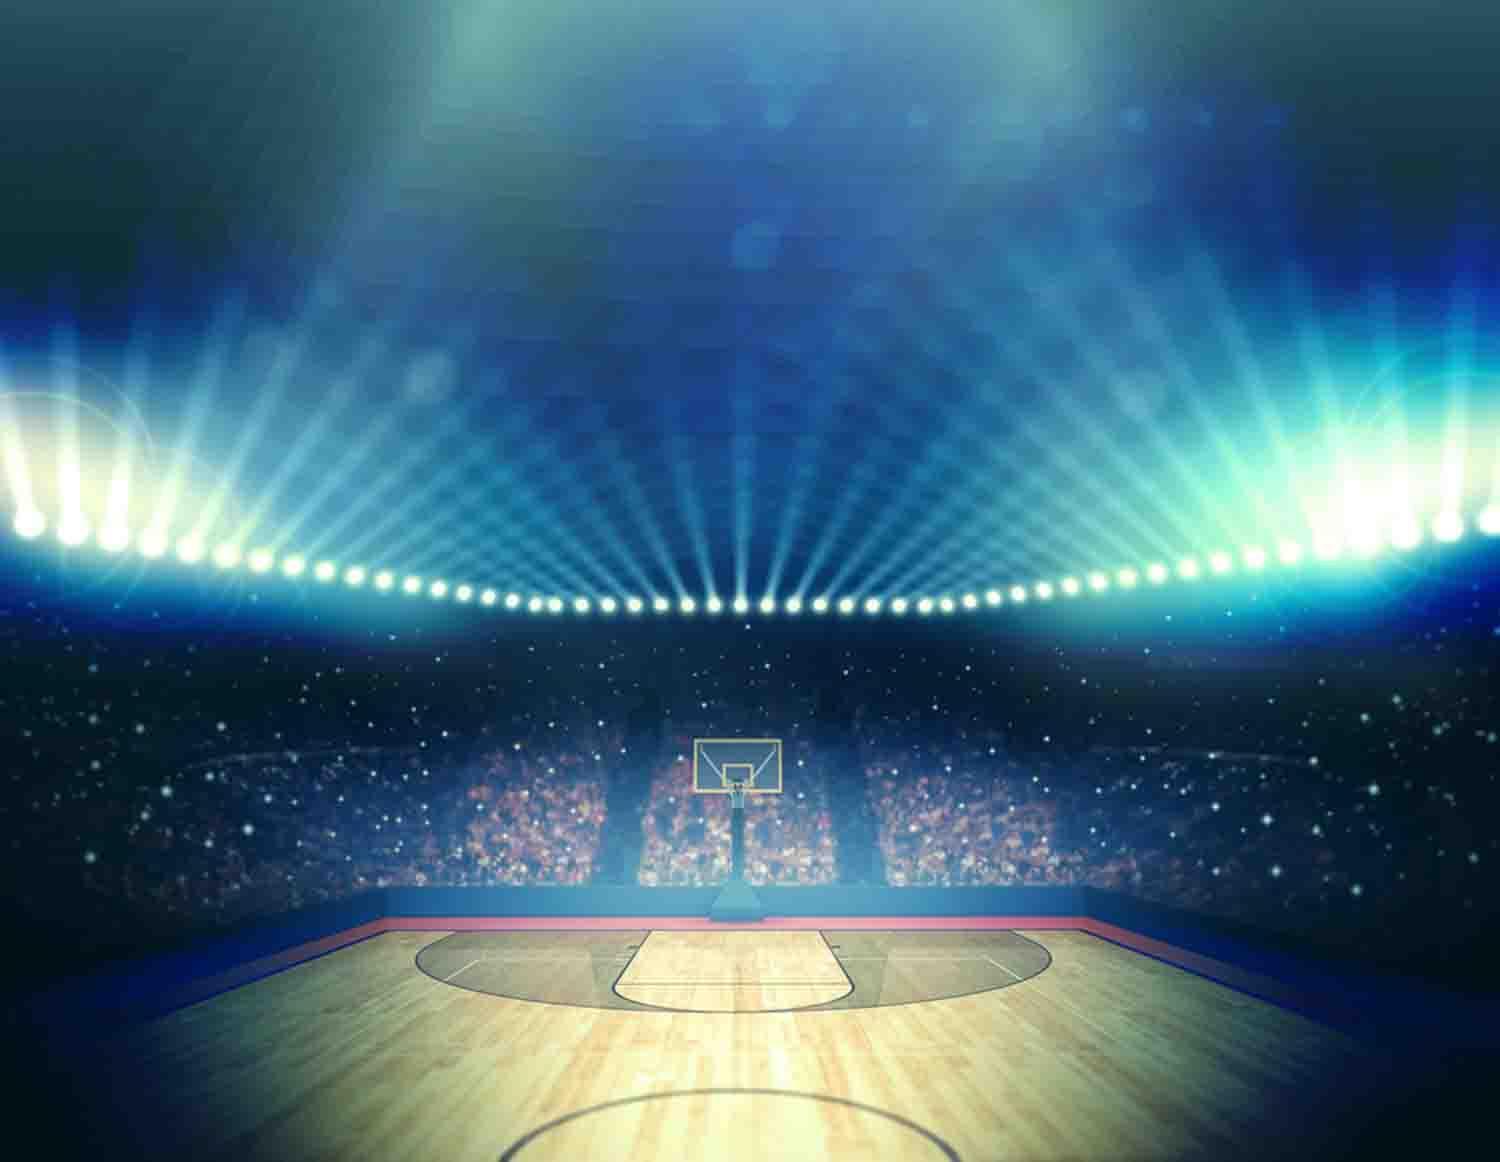 fond d'écran de basket ball pour android,bleu,lumière,étape,atmosphère,stade